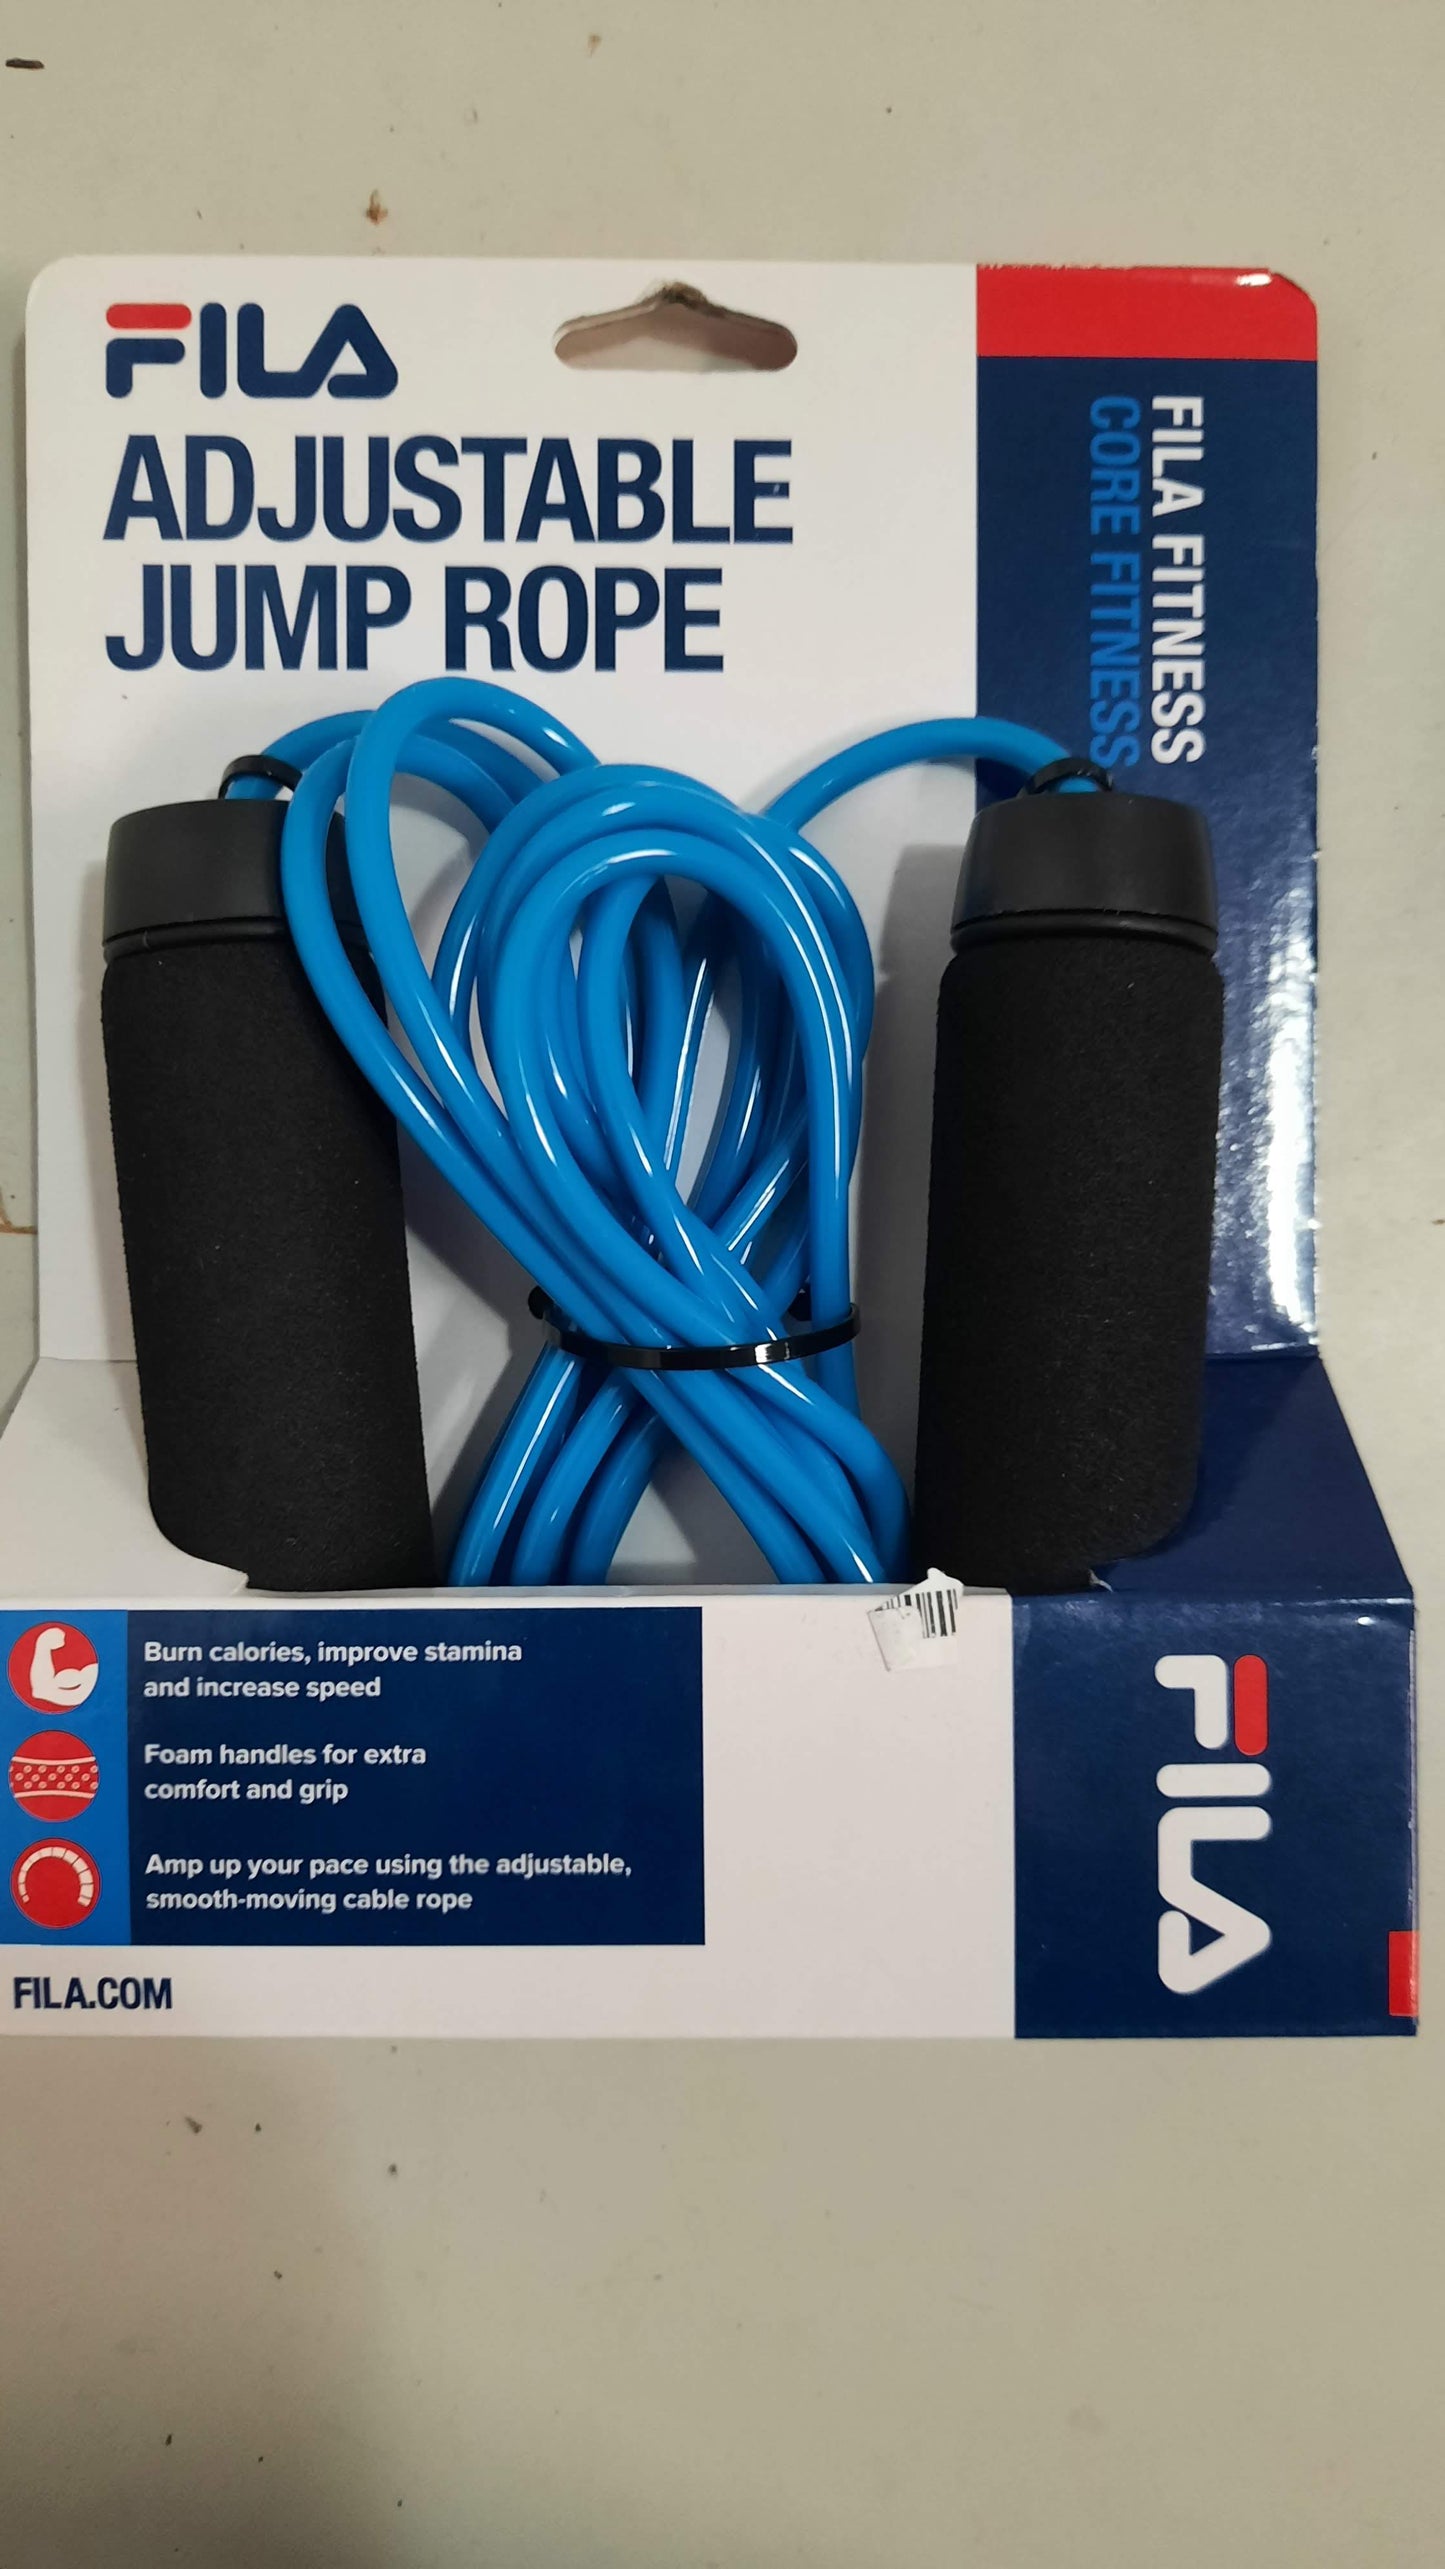 Fila Adjustable Jump Rope New Fitness